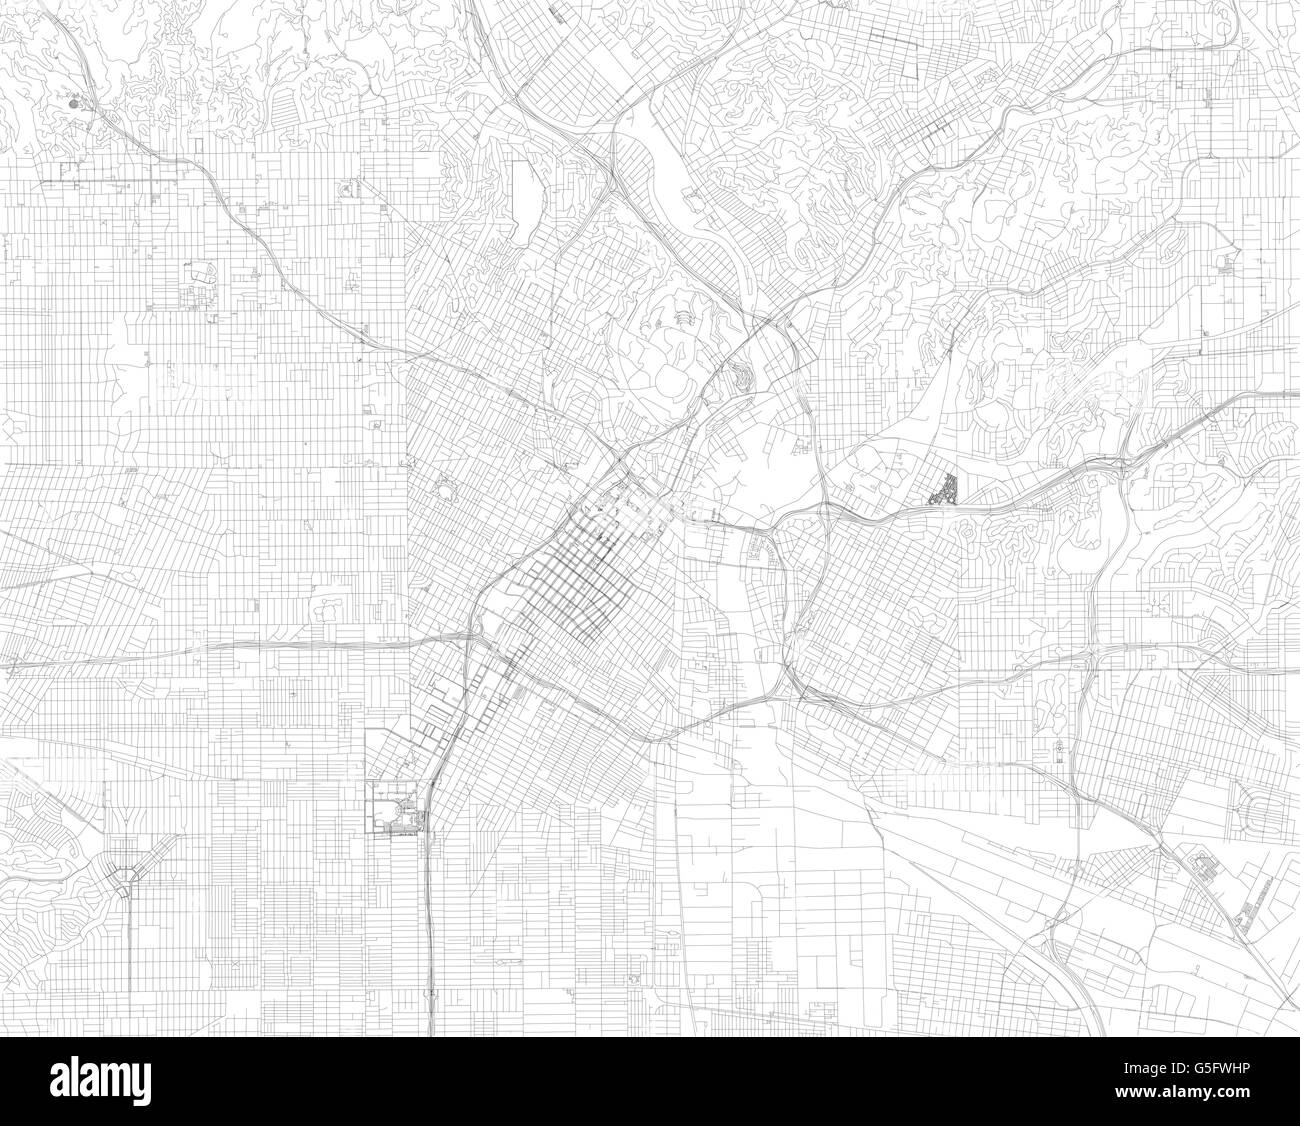 Karte von Los Angeles, Satellitenansicht, Straßen und Autobahnen, Usa Stock Vektor